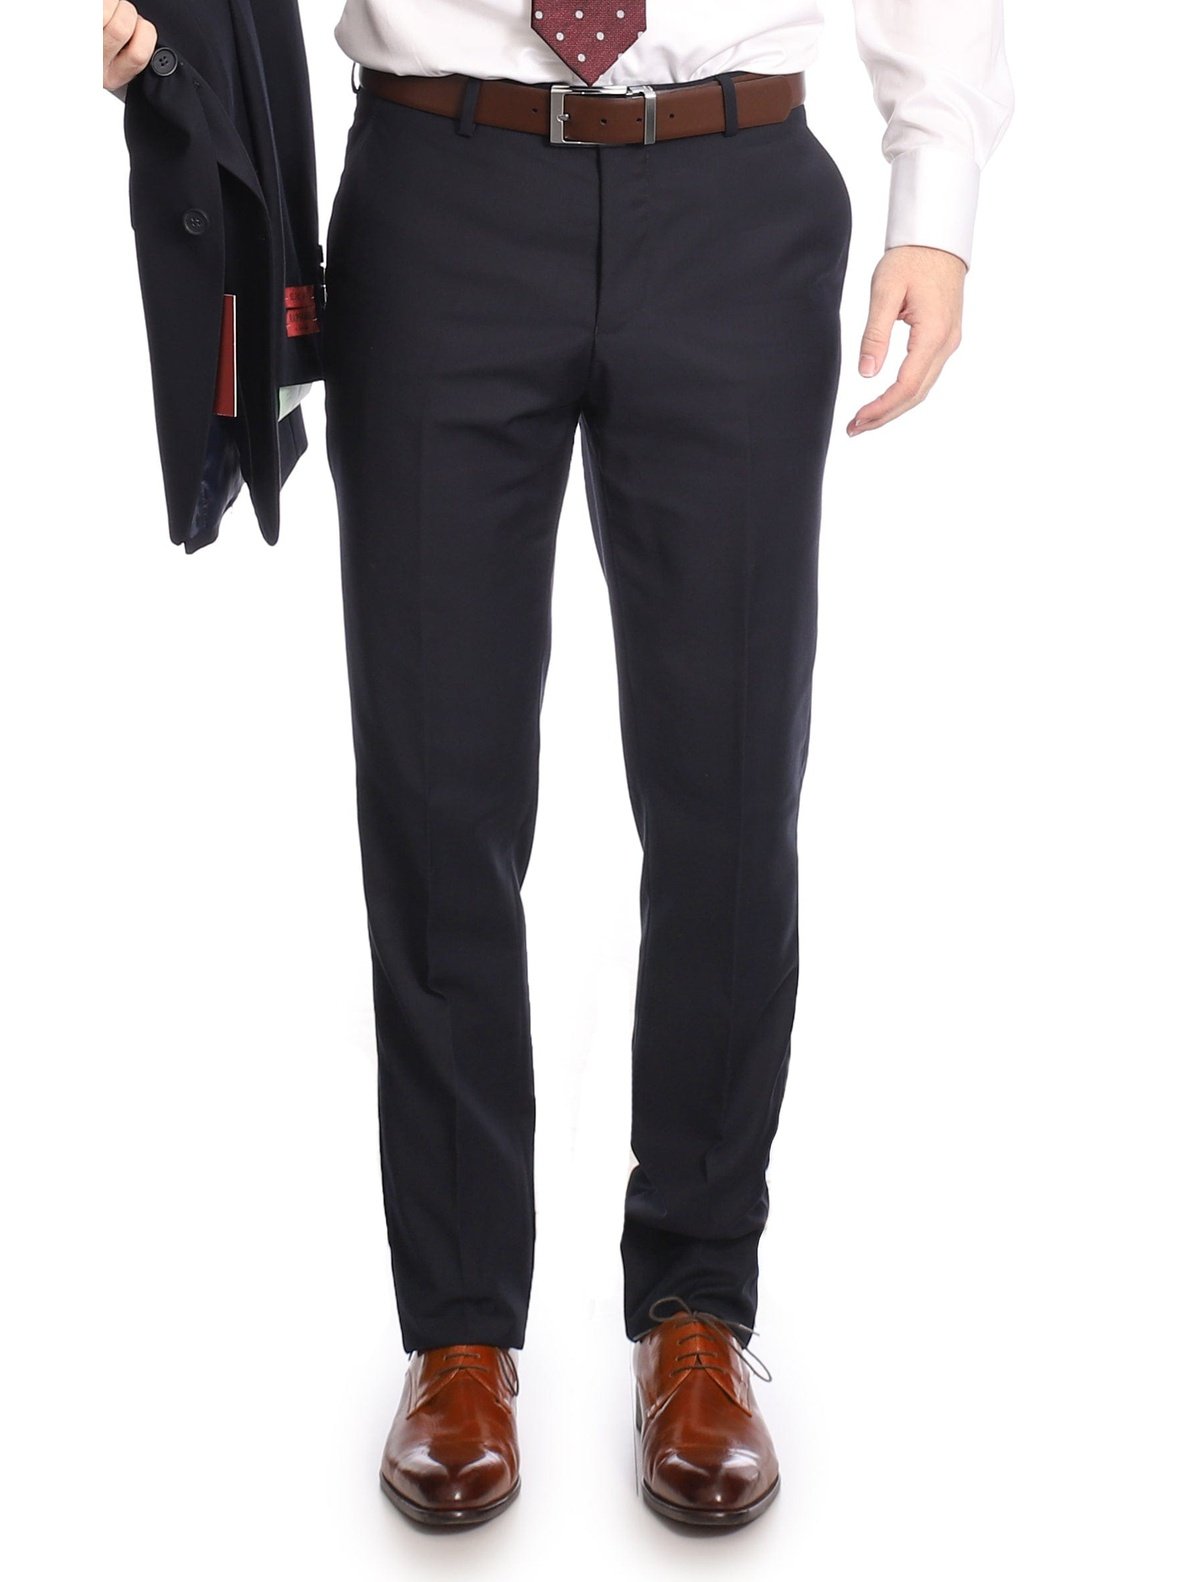 Men's Suit Slim Fit 3 Piece Suits for Men Formal One Button Solid